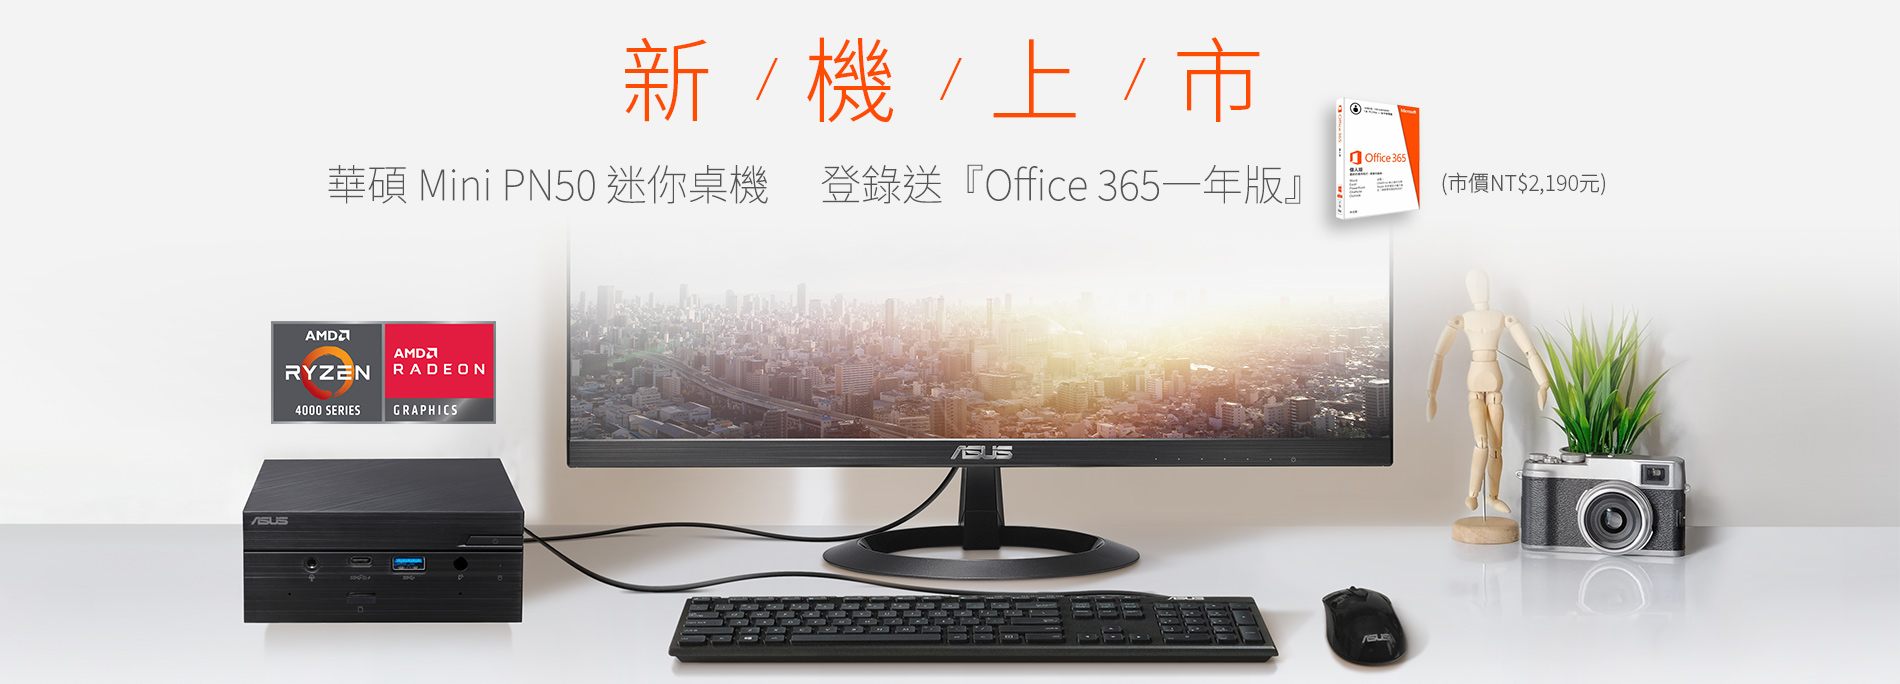 [情報] 華碩PN50APU小PC買就送office 365一年